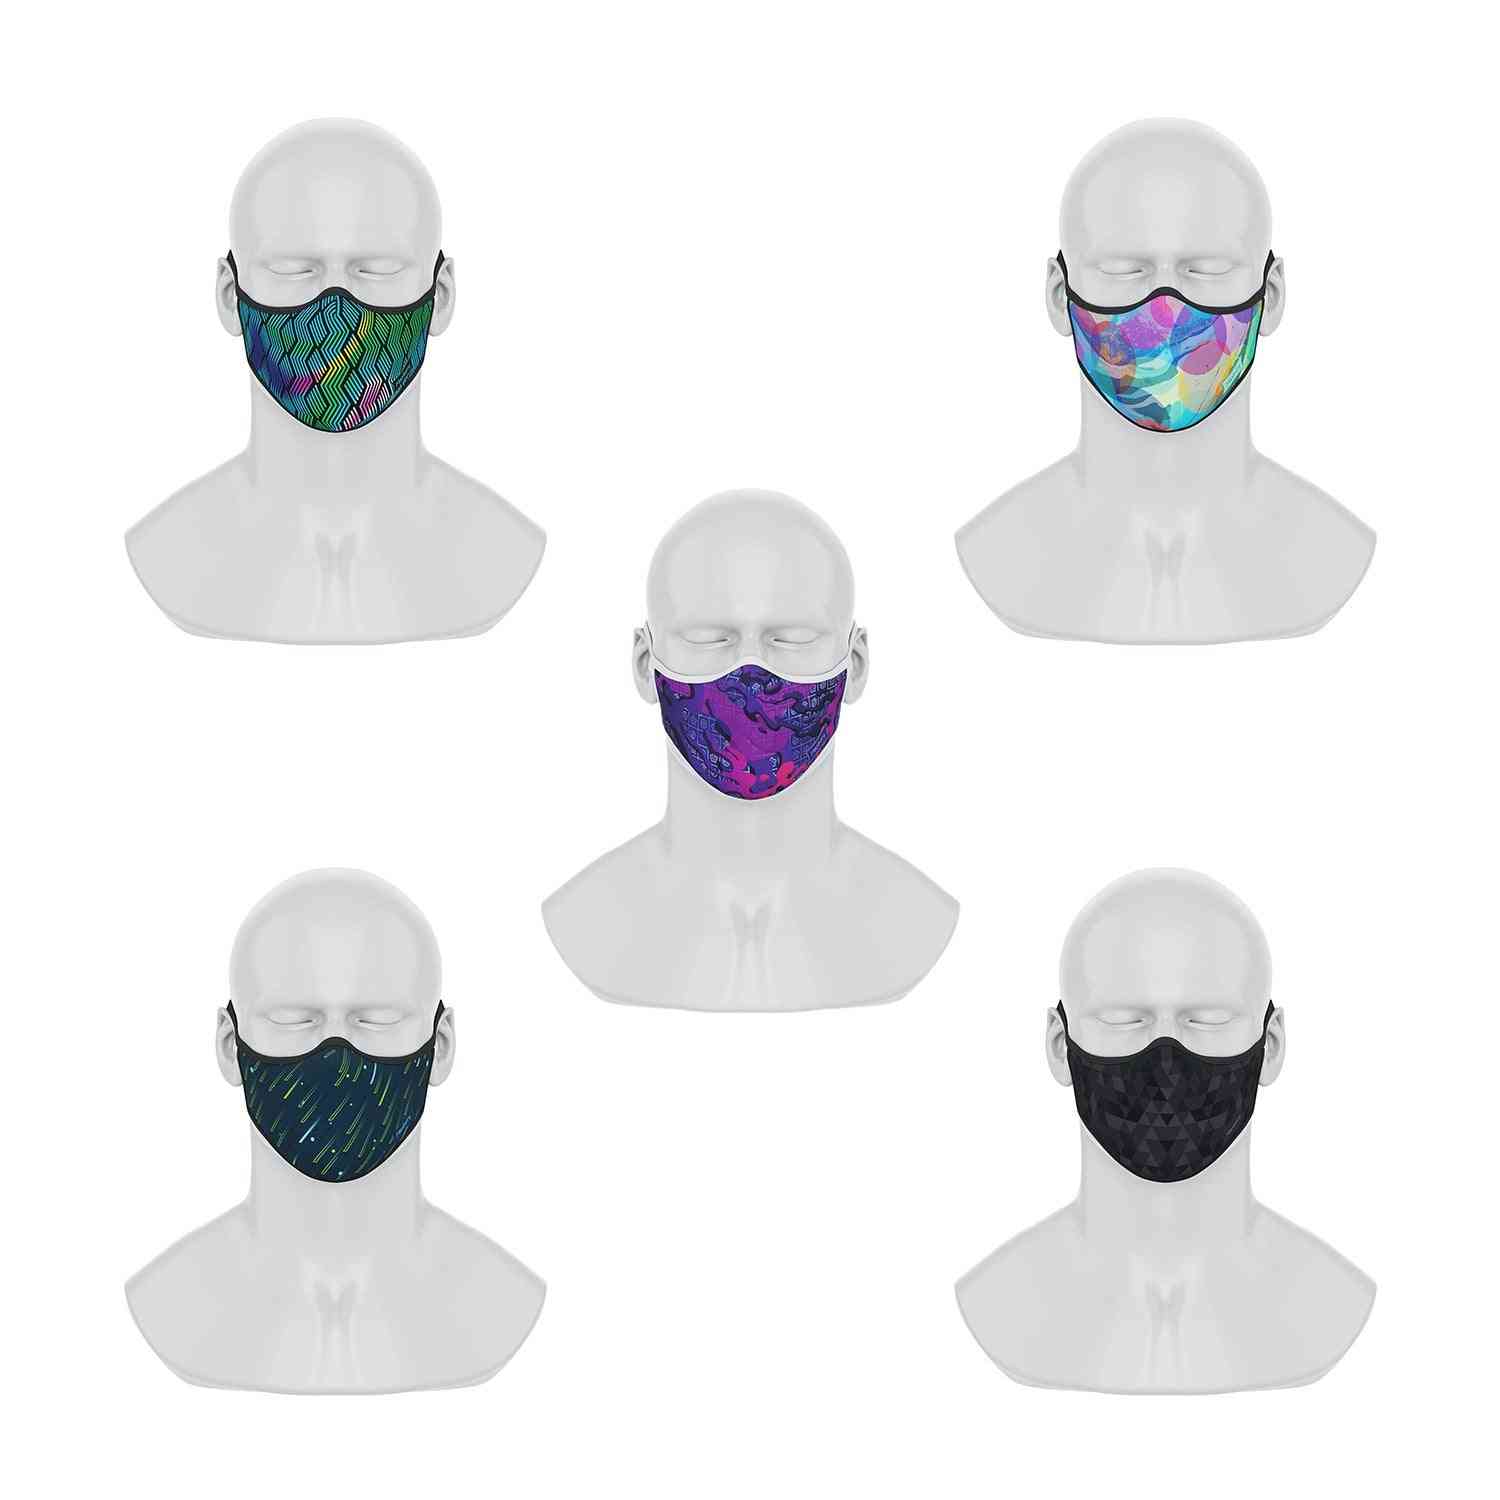 Maskery premium -kasvomaskit vilkkuvat tulevaan sarjaan